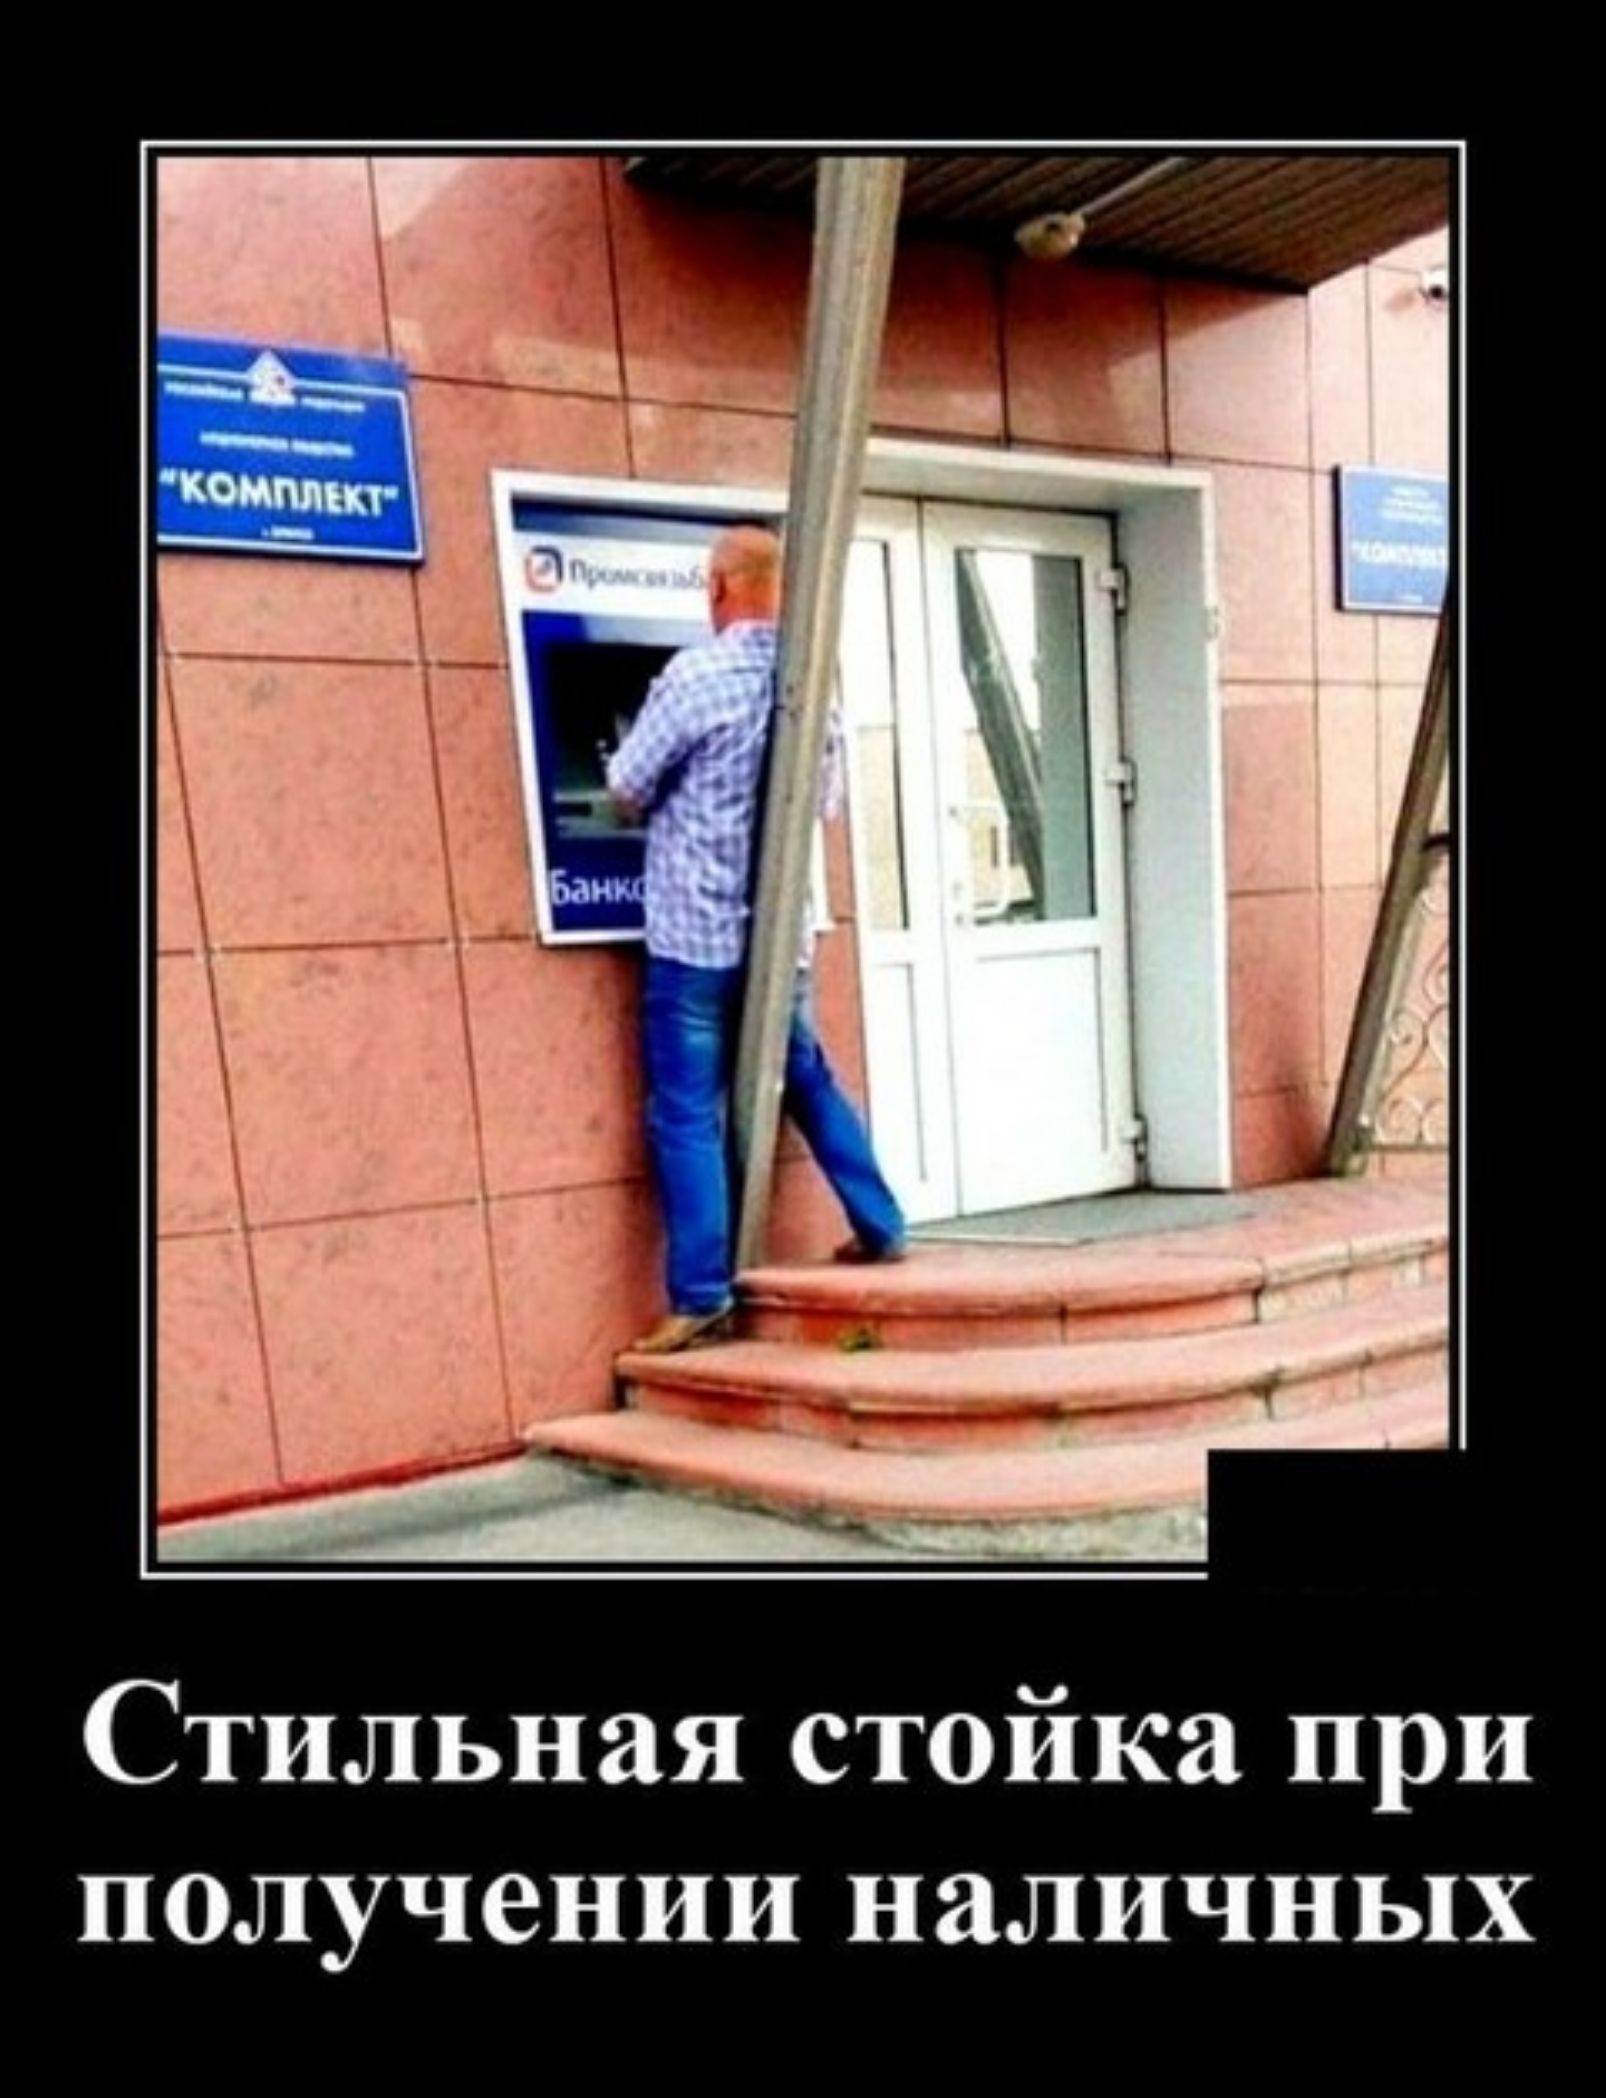 Свежие демотиваторы по русски